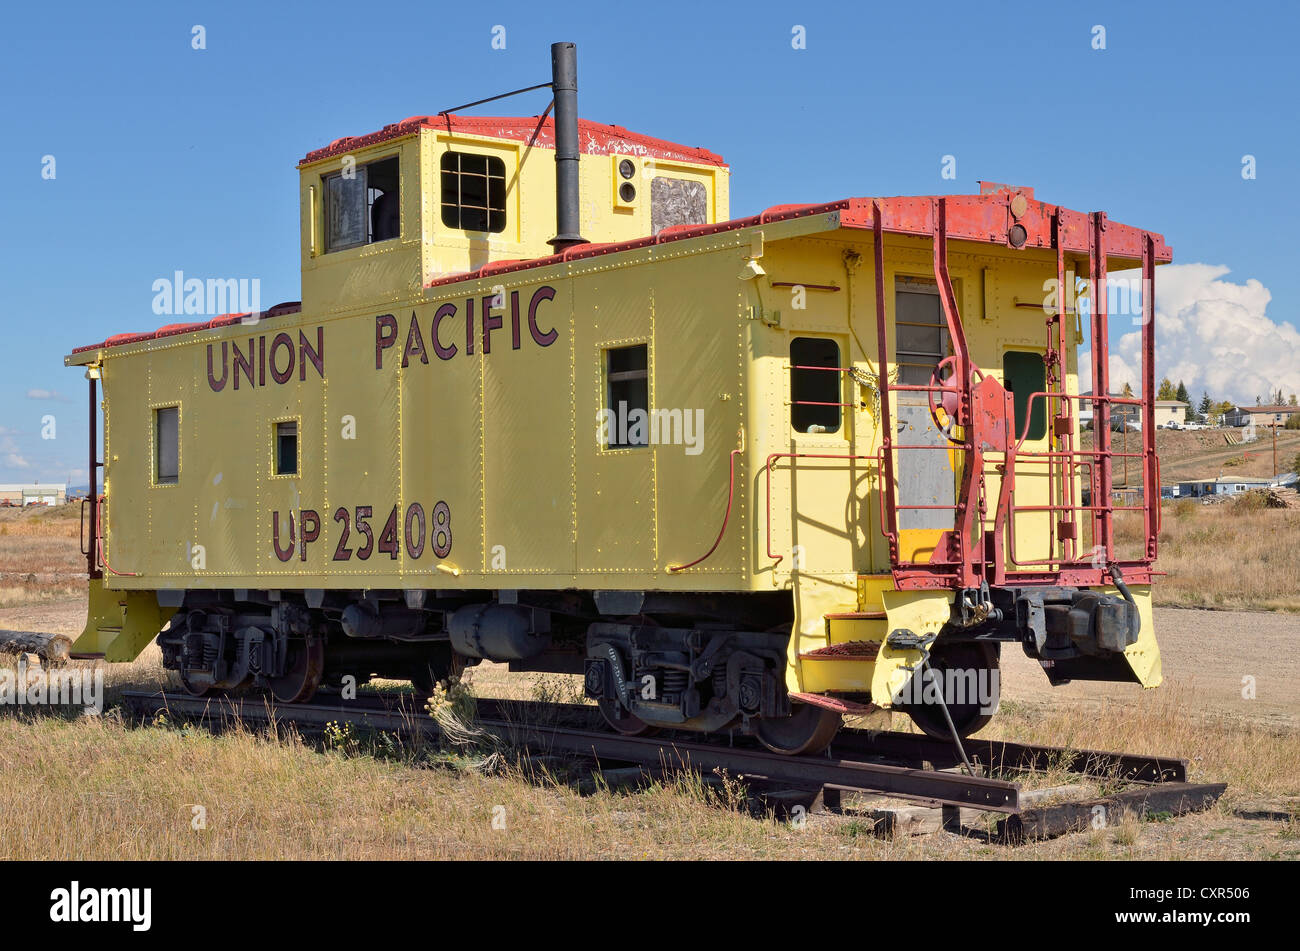 Scartato Union Pacific locomotore ferroviario, il più grande degli Stati Uniti di trasporto merci ferroviario company, Walden, Strada Statale 125, Colorado, STATI UNITI D'AMERICA Foto Stock